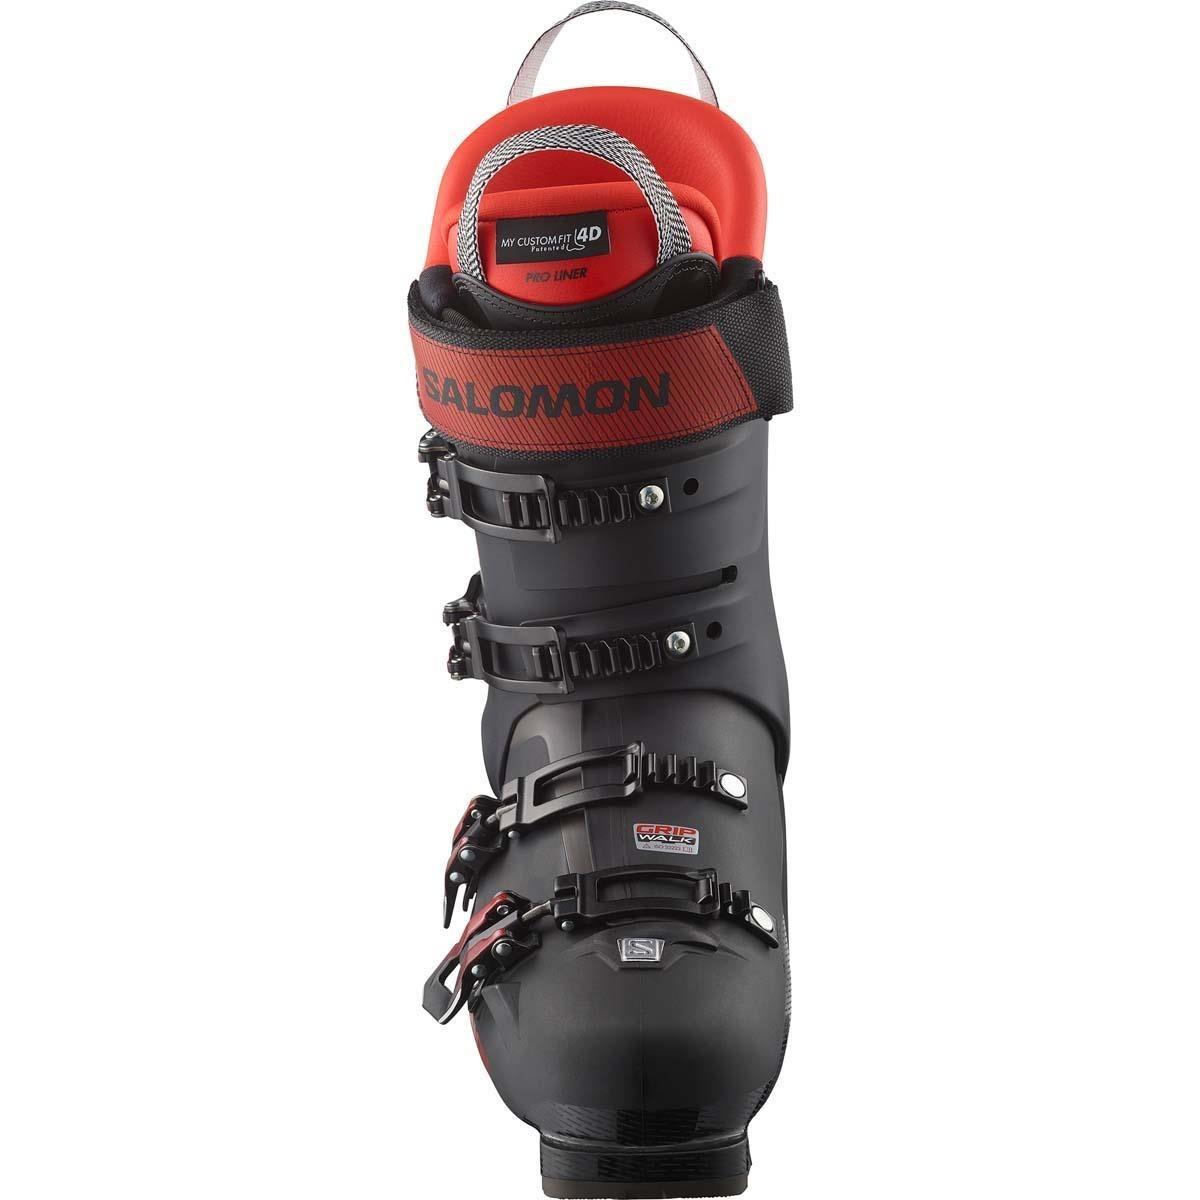 Salomon S/PRO MV 110 Ski Boot